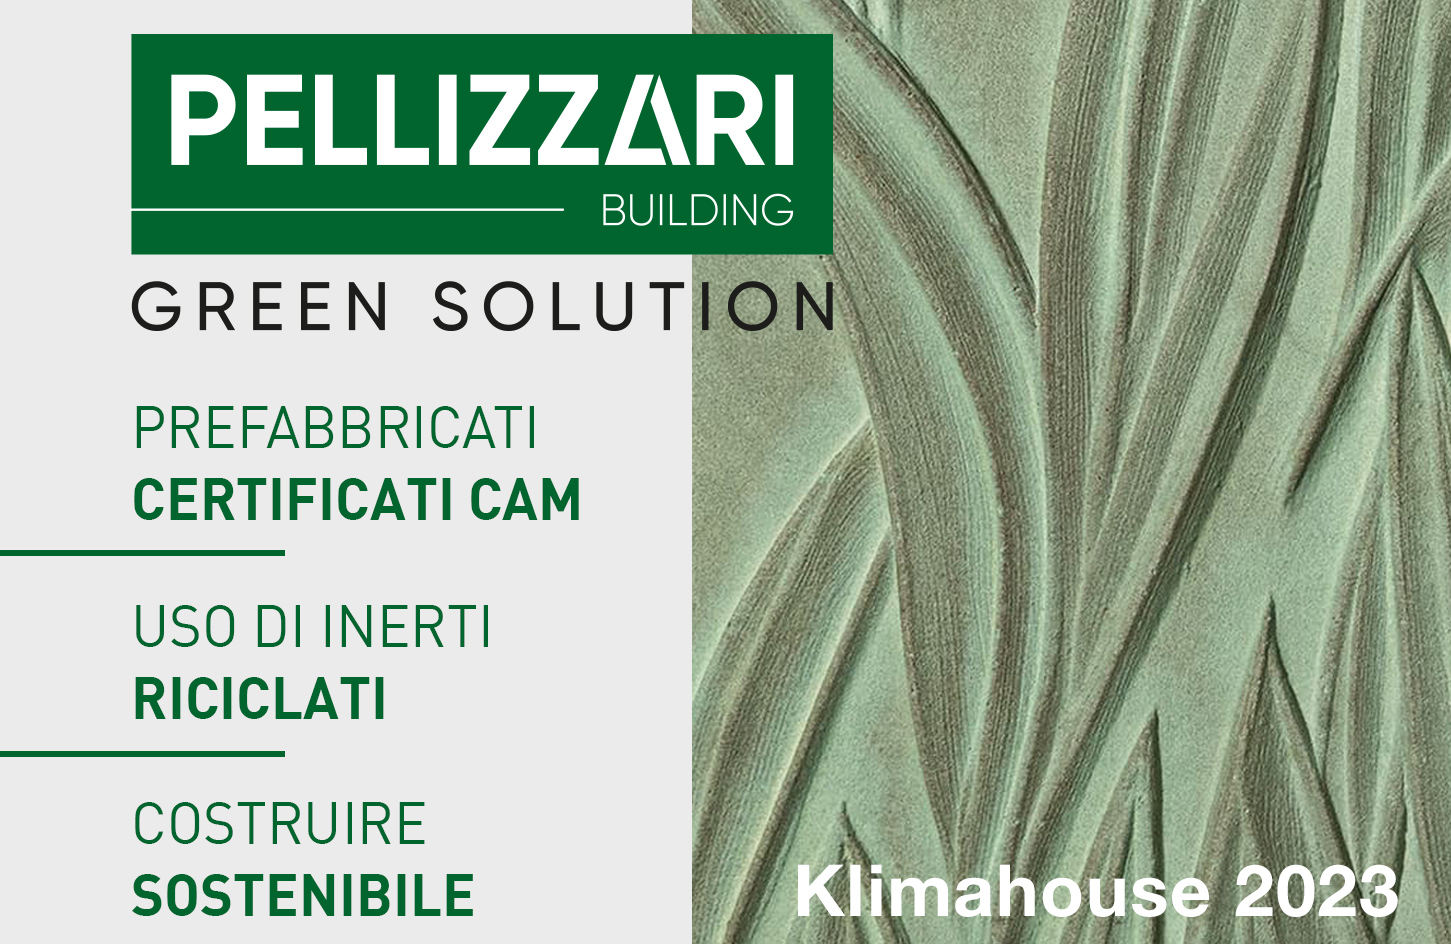 green-solution-pellizzari-building-prefabbricati-concrete-skin